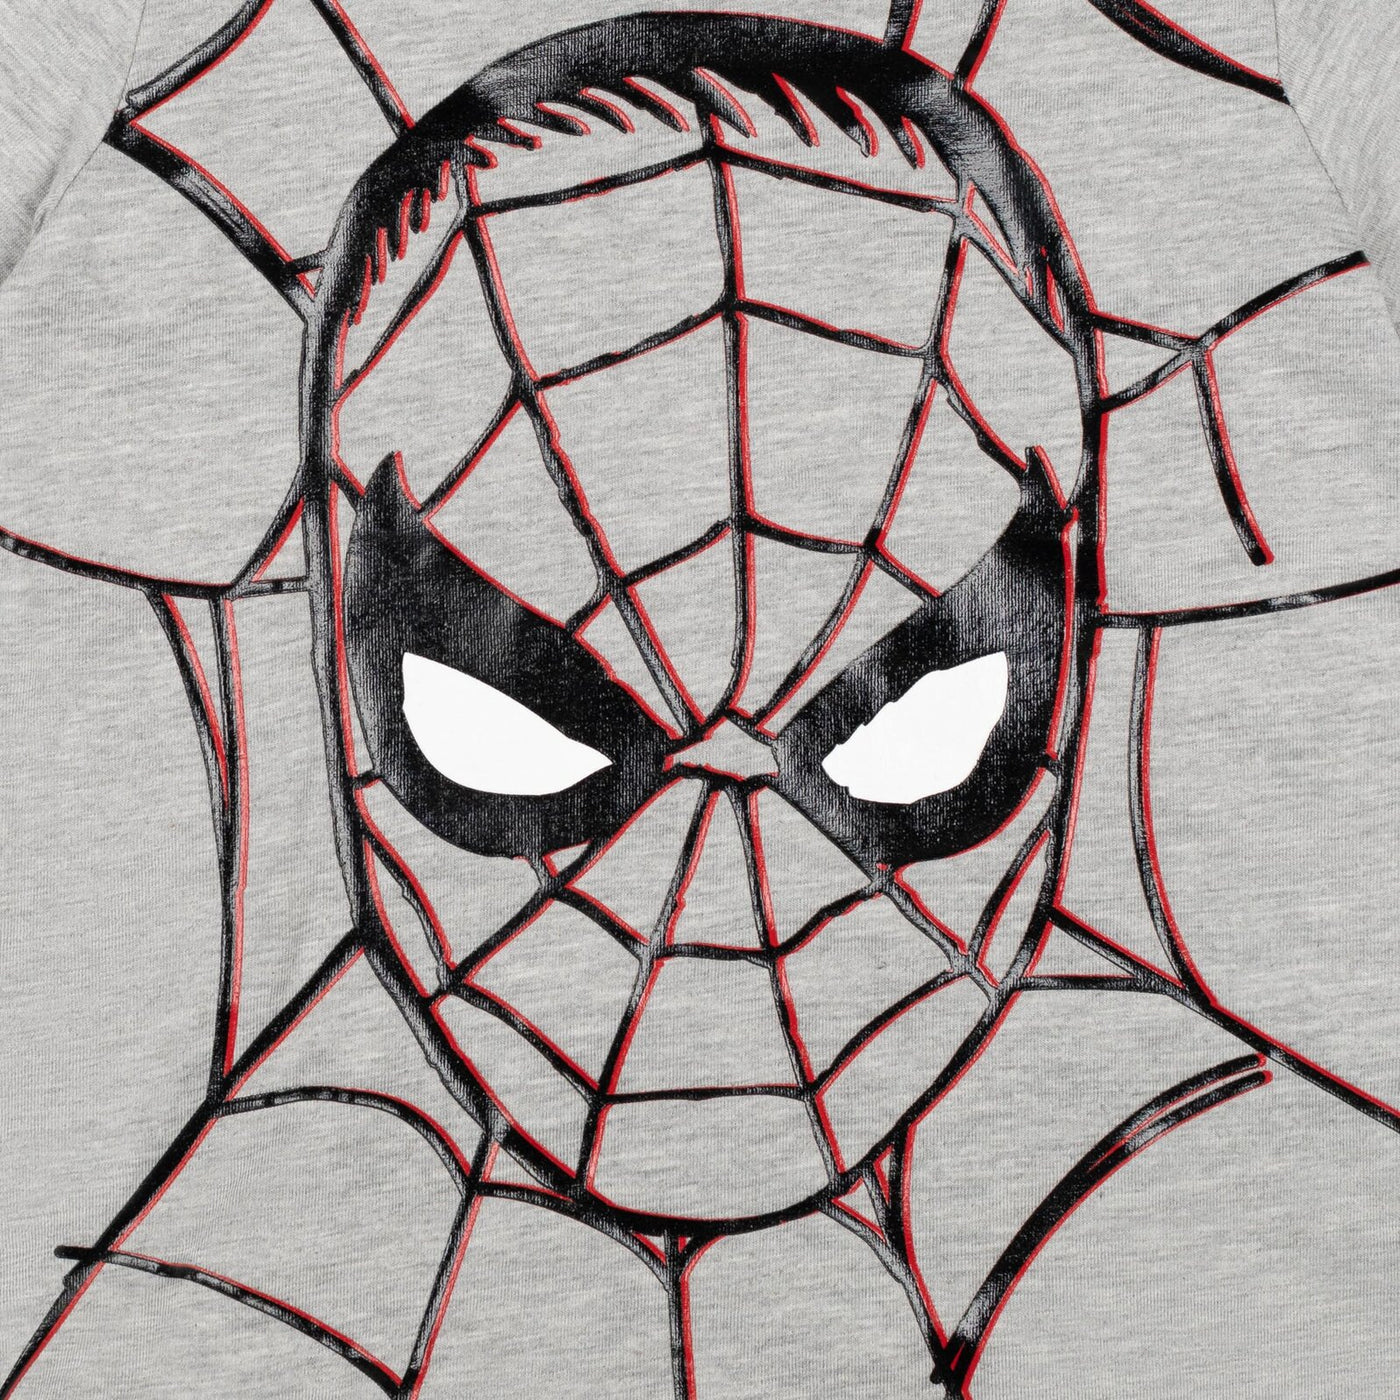 Conjunto de 3 piezas de Spider-Man French Terry: sudadera con capucha, camiseta, pantalones